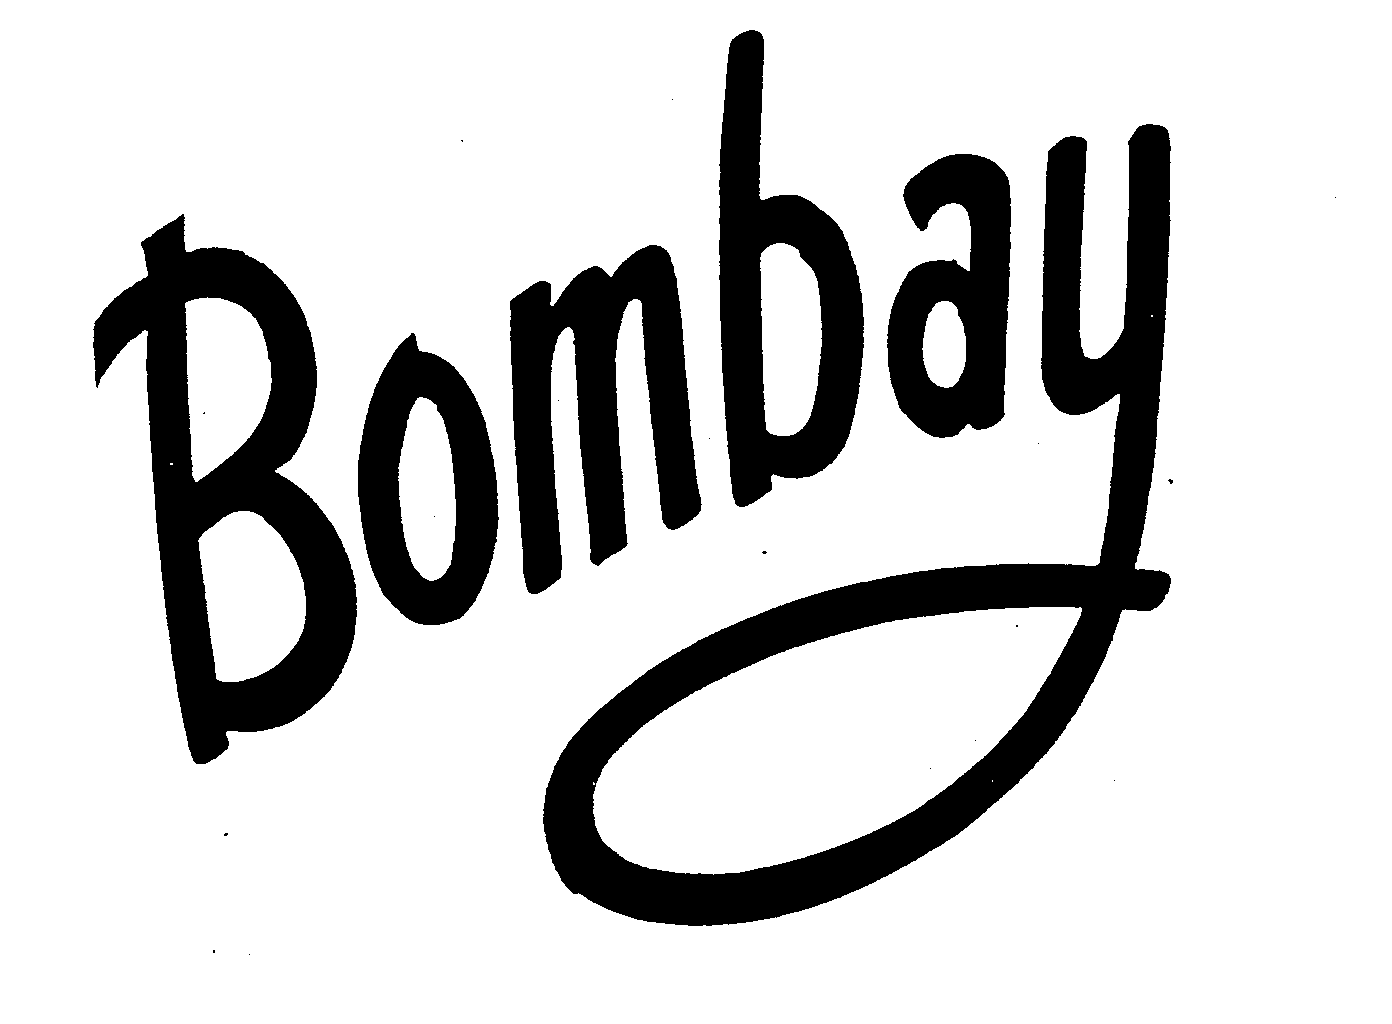 BOMBAY